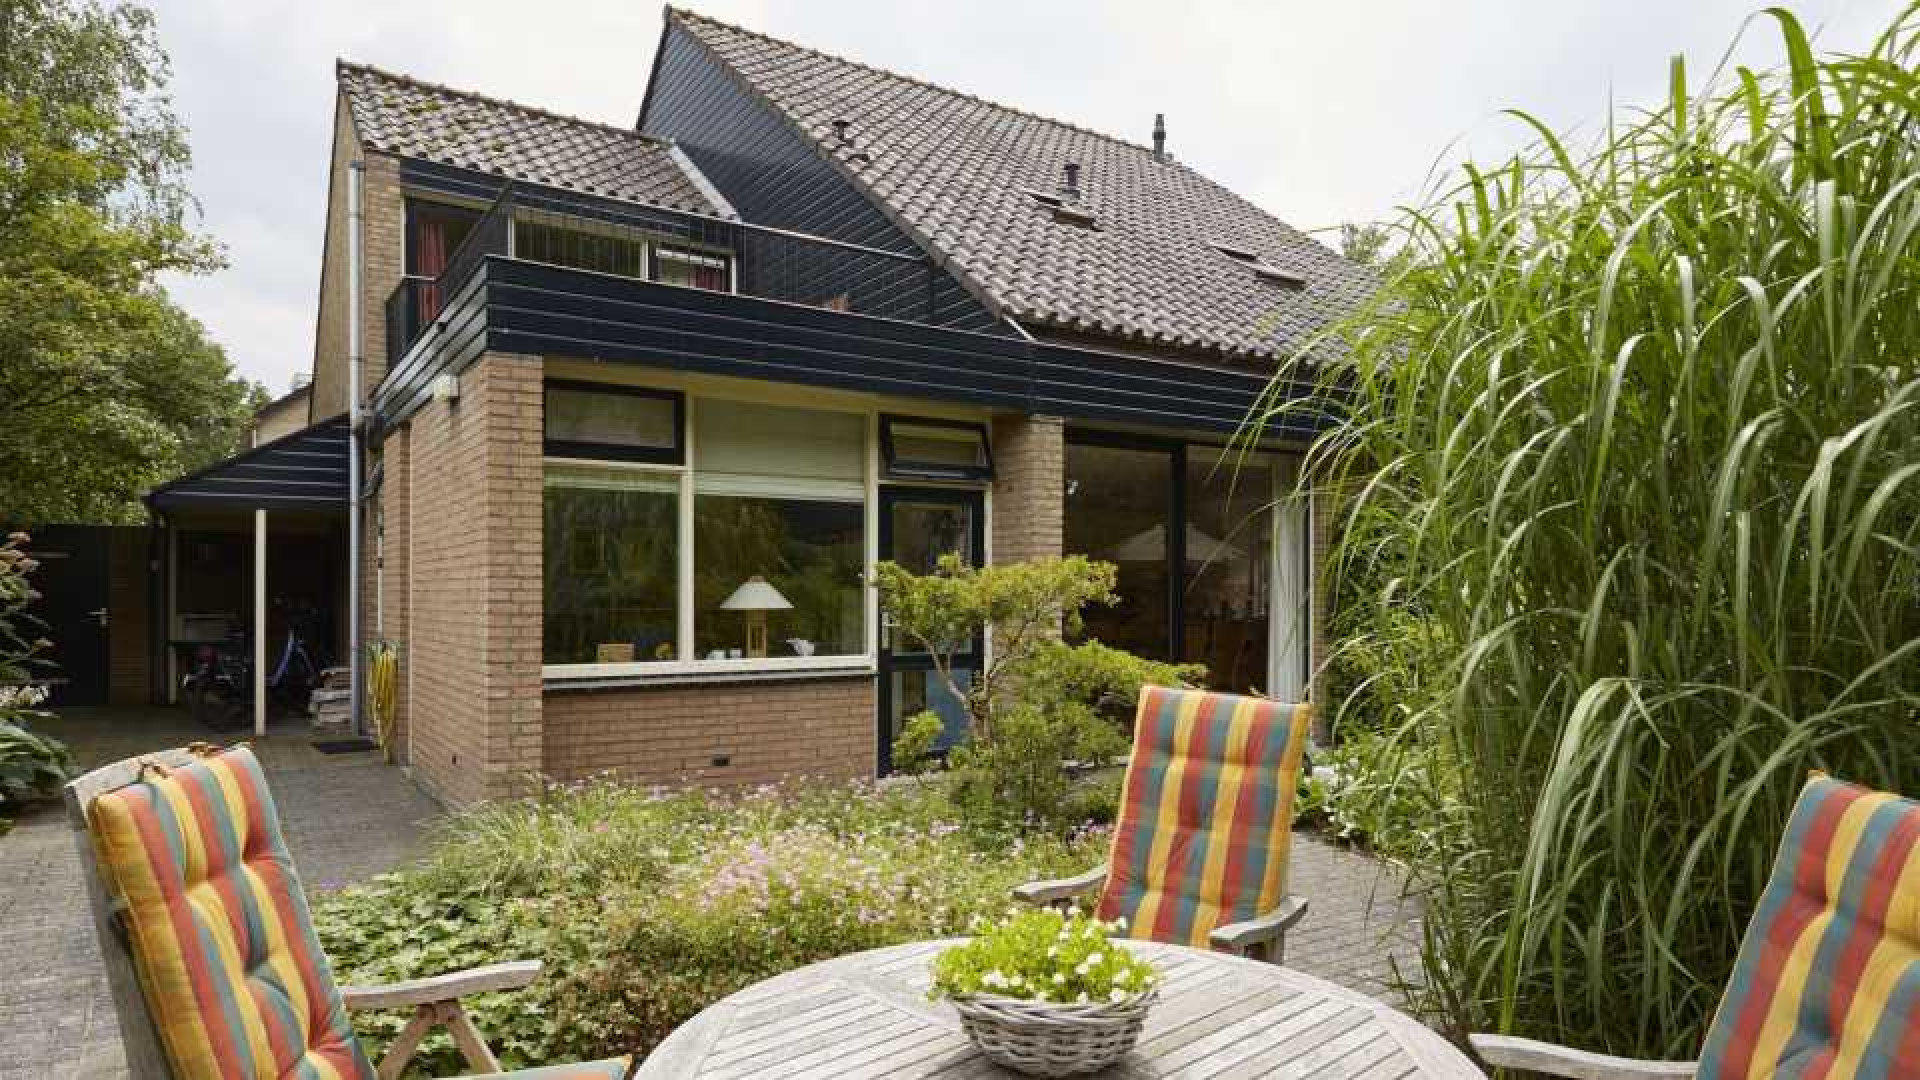 Voormalig NOS Journaal presentator Gijs Wanders zet zijn familiehuis te koop. Zie foto's 18